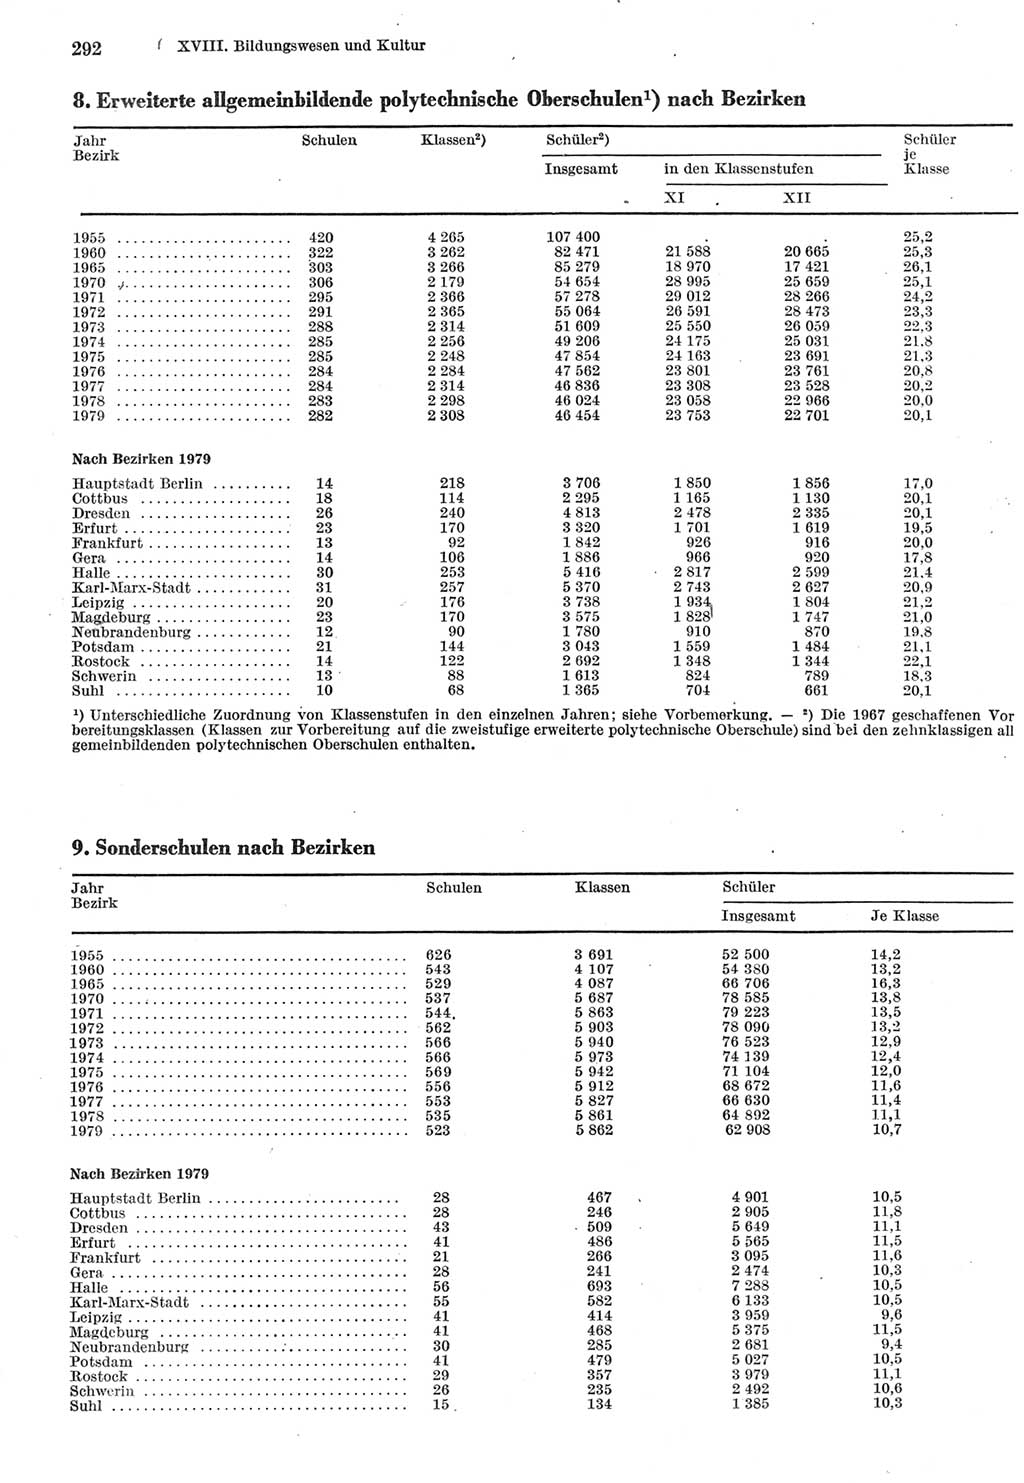 Statistisches Jahrbuch der Deutschen Demokratischen Republik (DDR) 1980, Seite 292 (Stat. Jb. DDR 1980, S. 292)